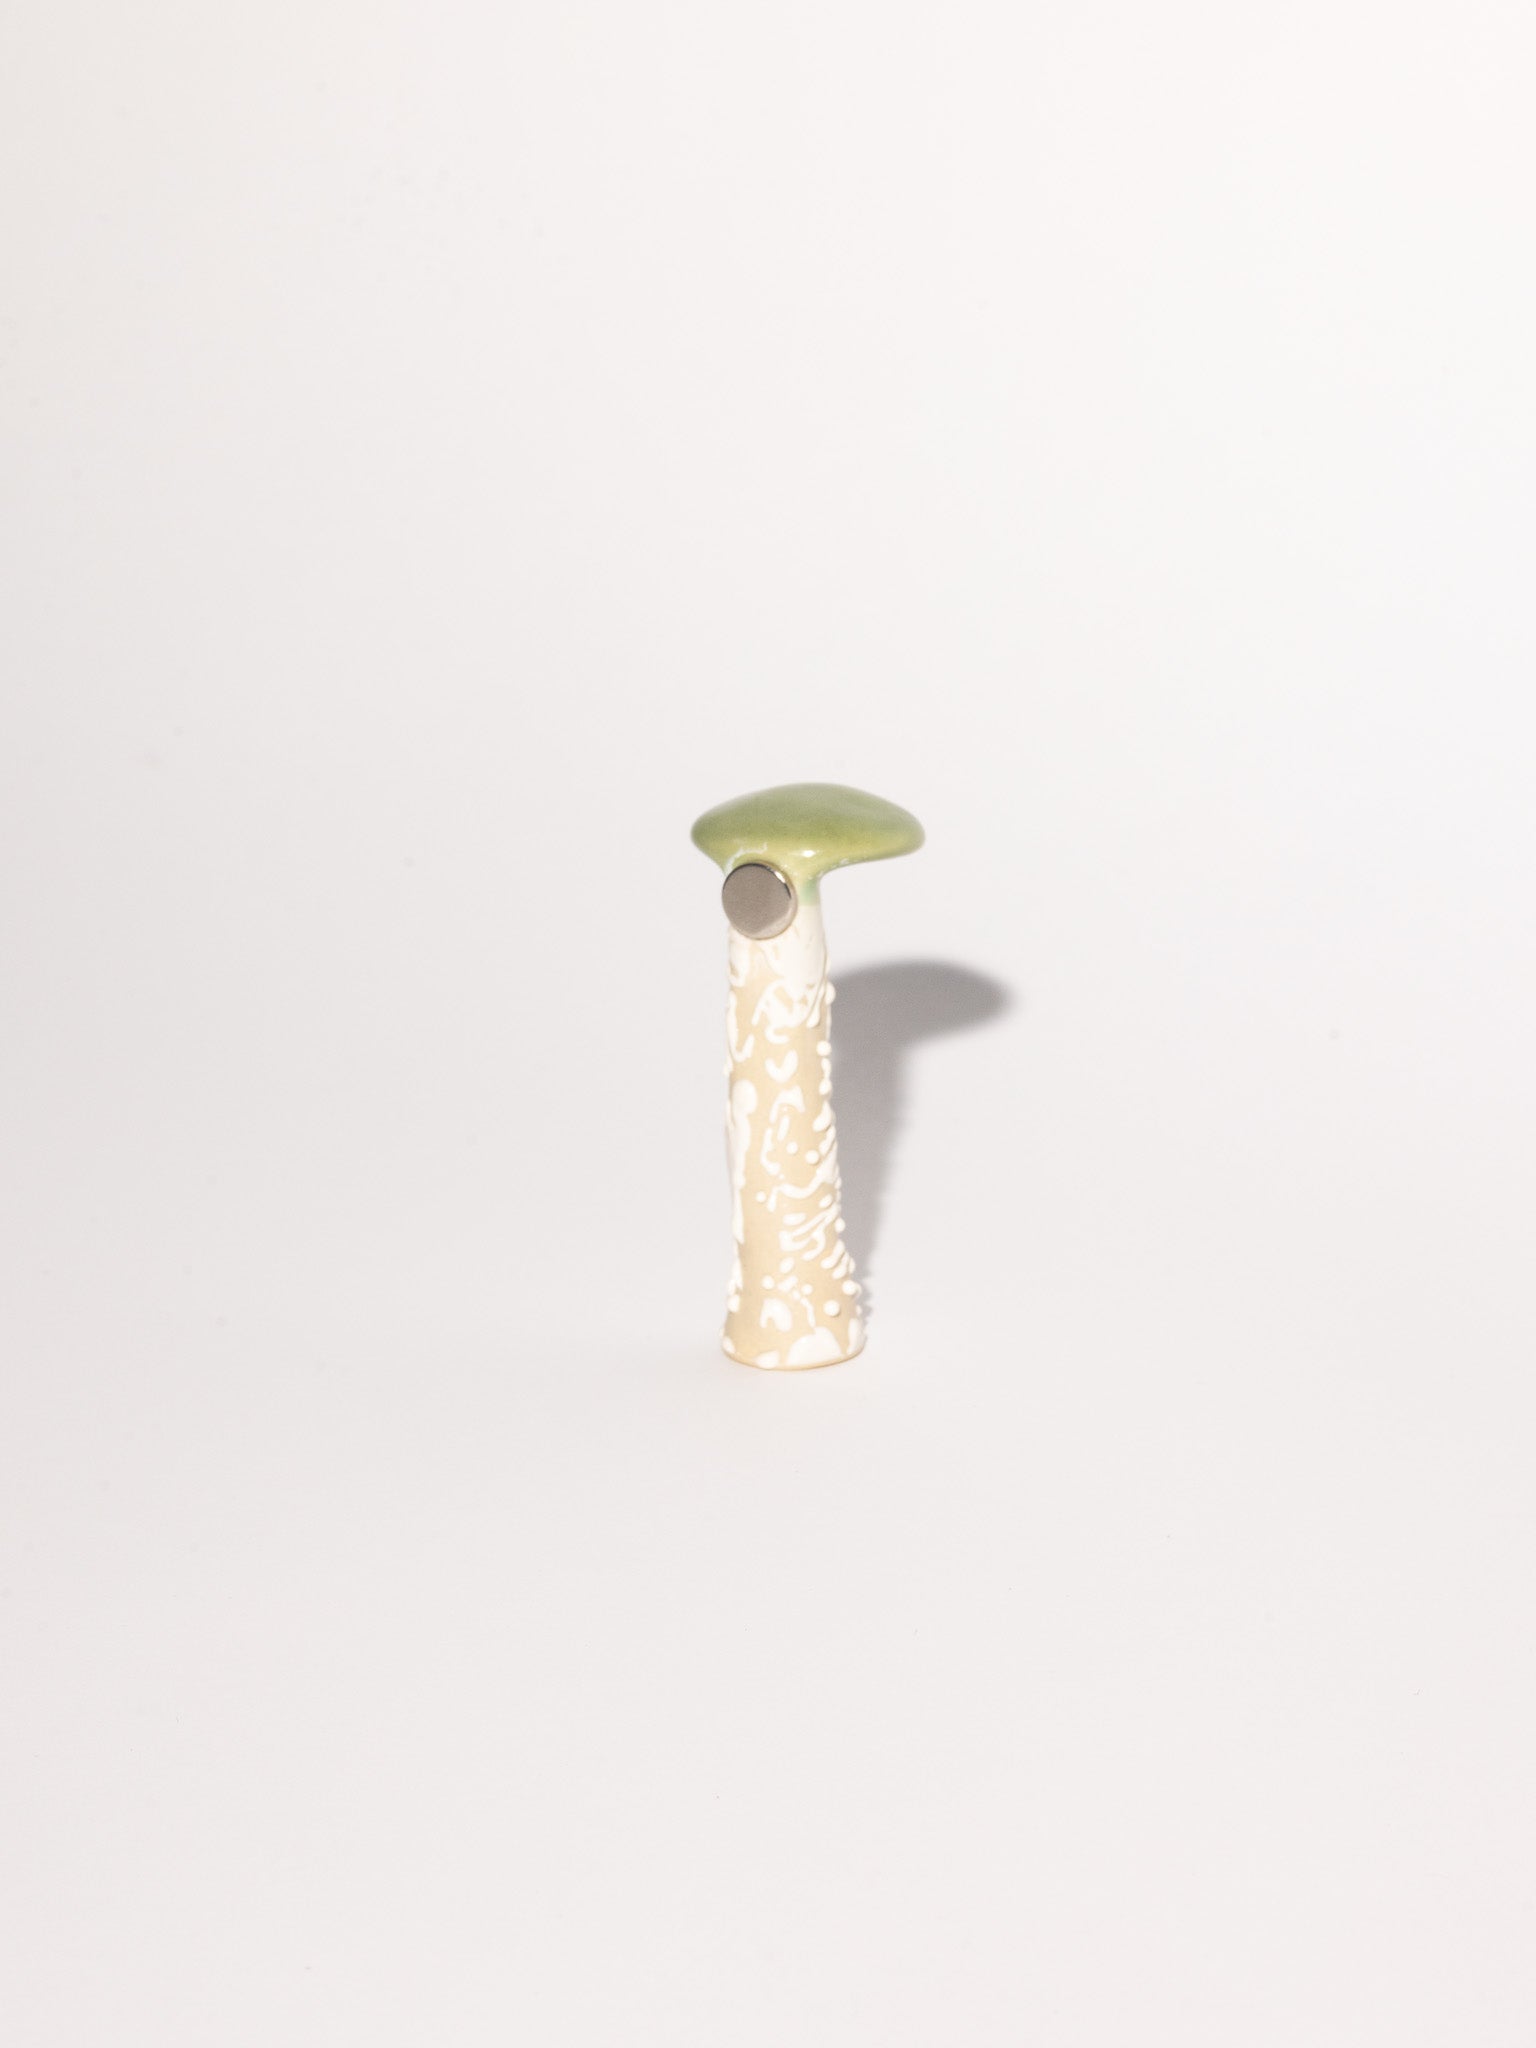 Mushroom Magnetic 05